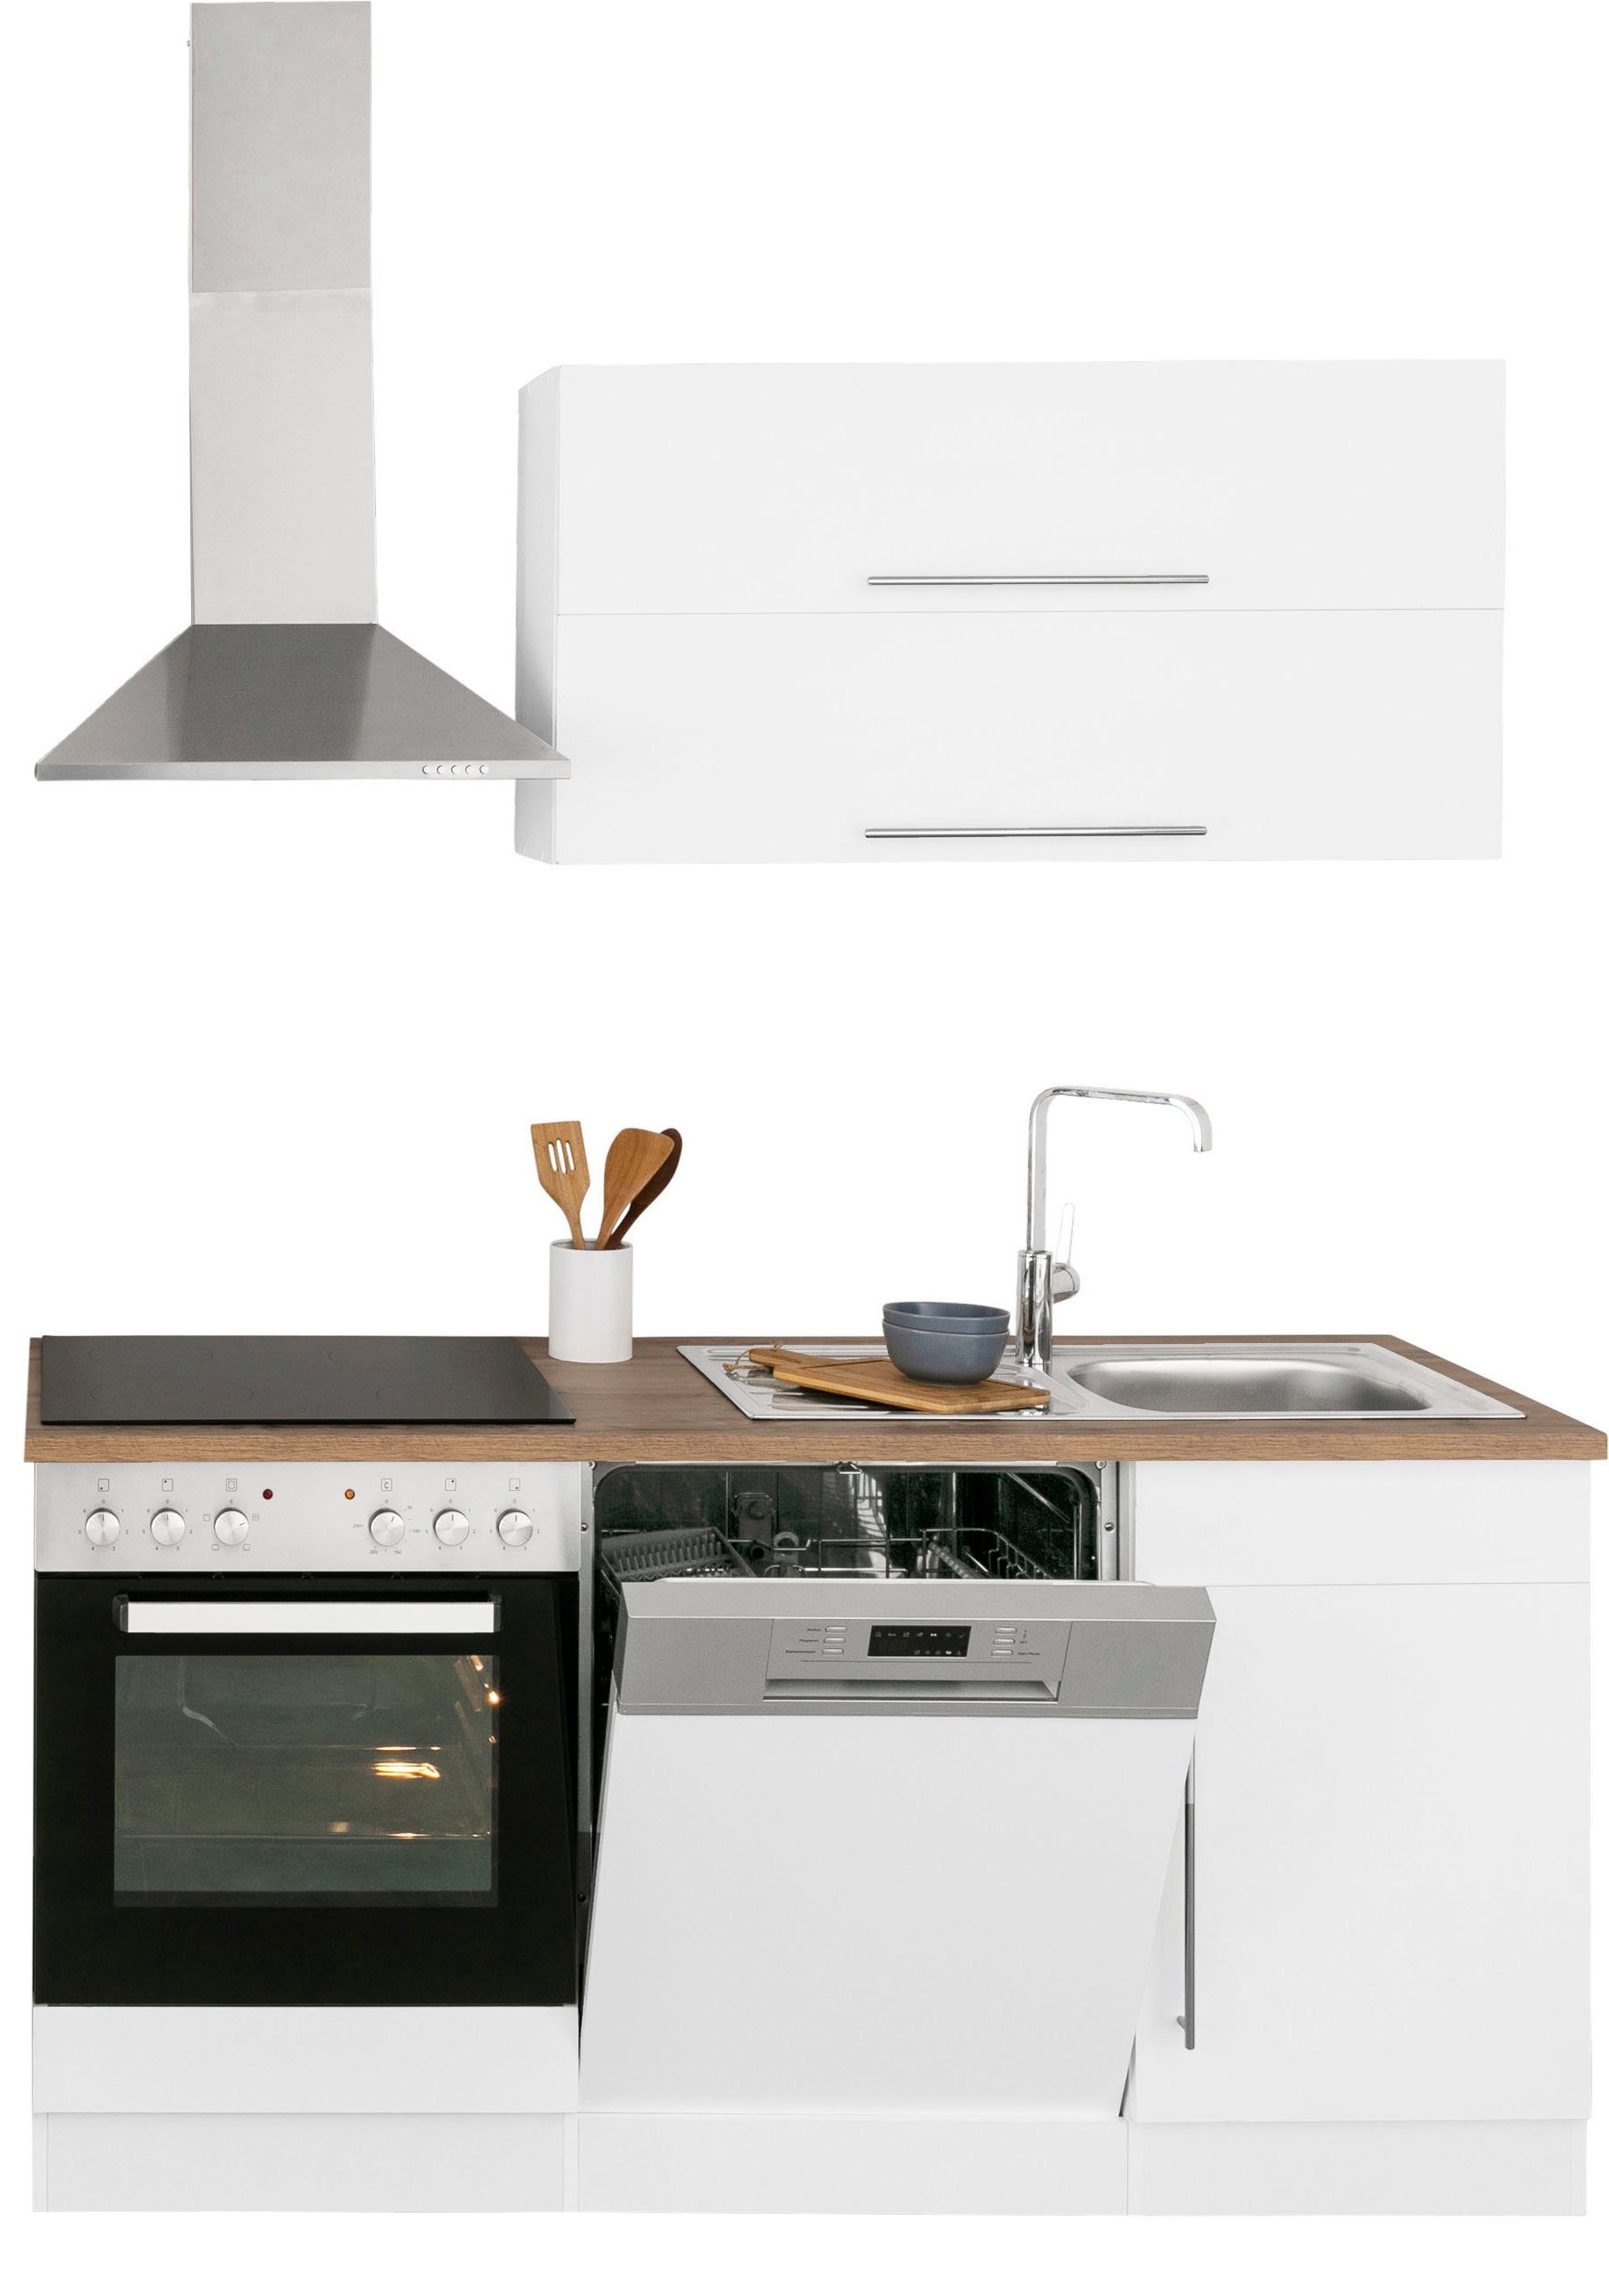 Samos, | mit weiß/wotaneichefarben cm E-Geräten, MÖBEL HELD weiß 170 Küchenzeile Breite